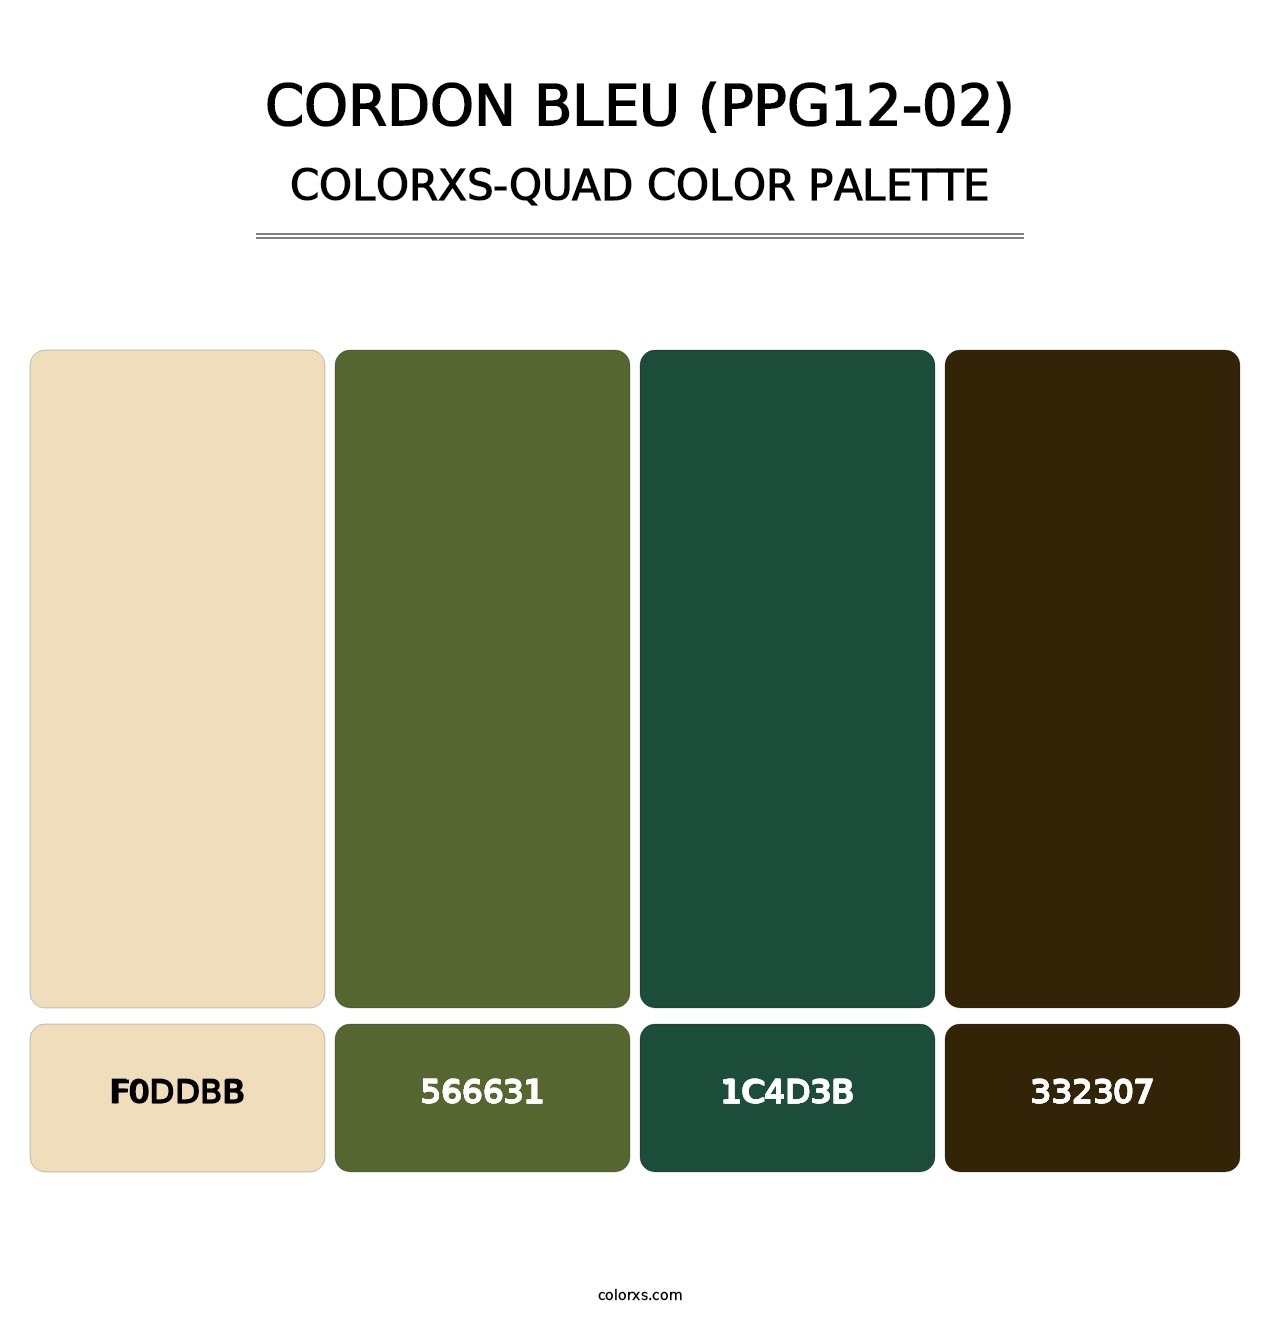 Cordon Bleu (PPG12-02) - Colorxs Quad Palette